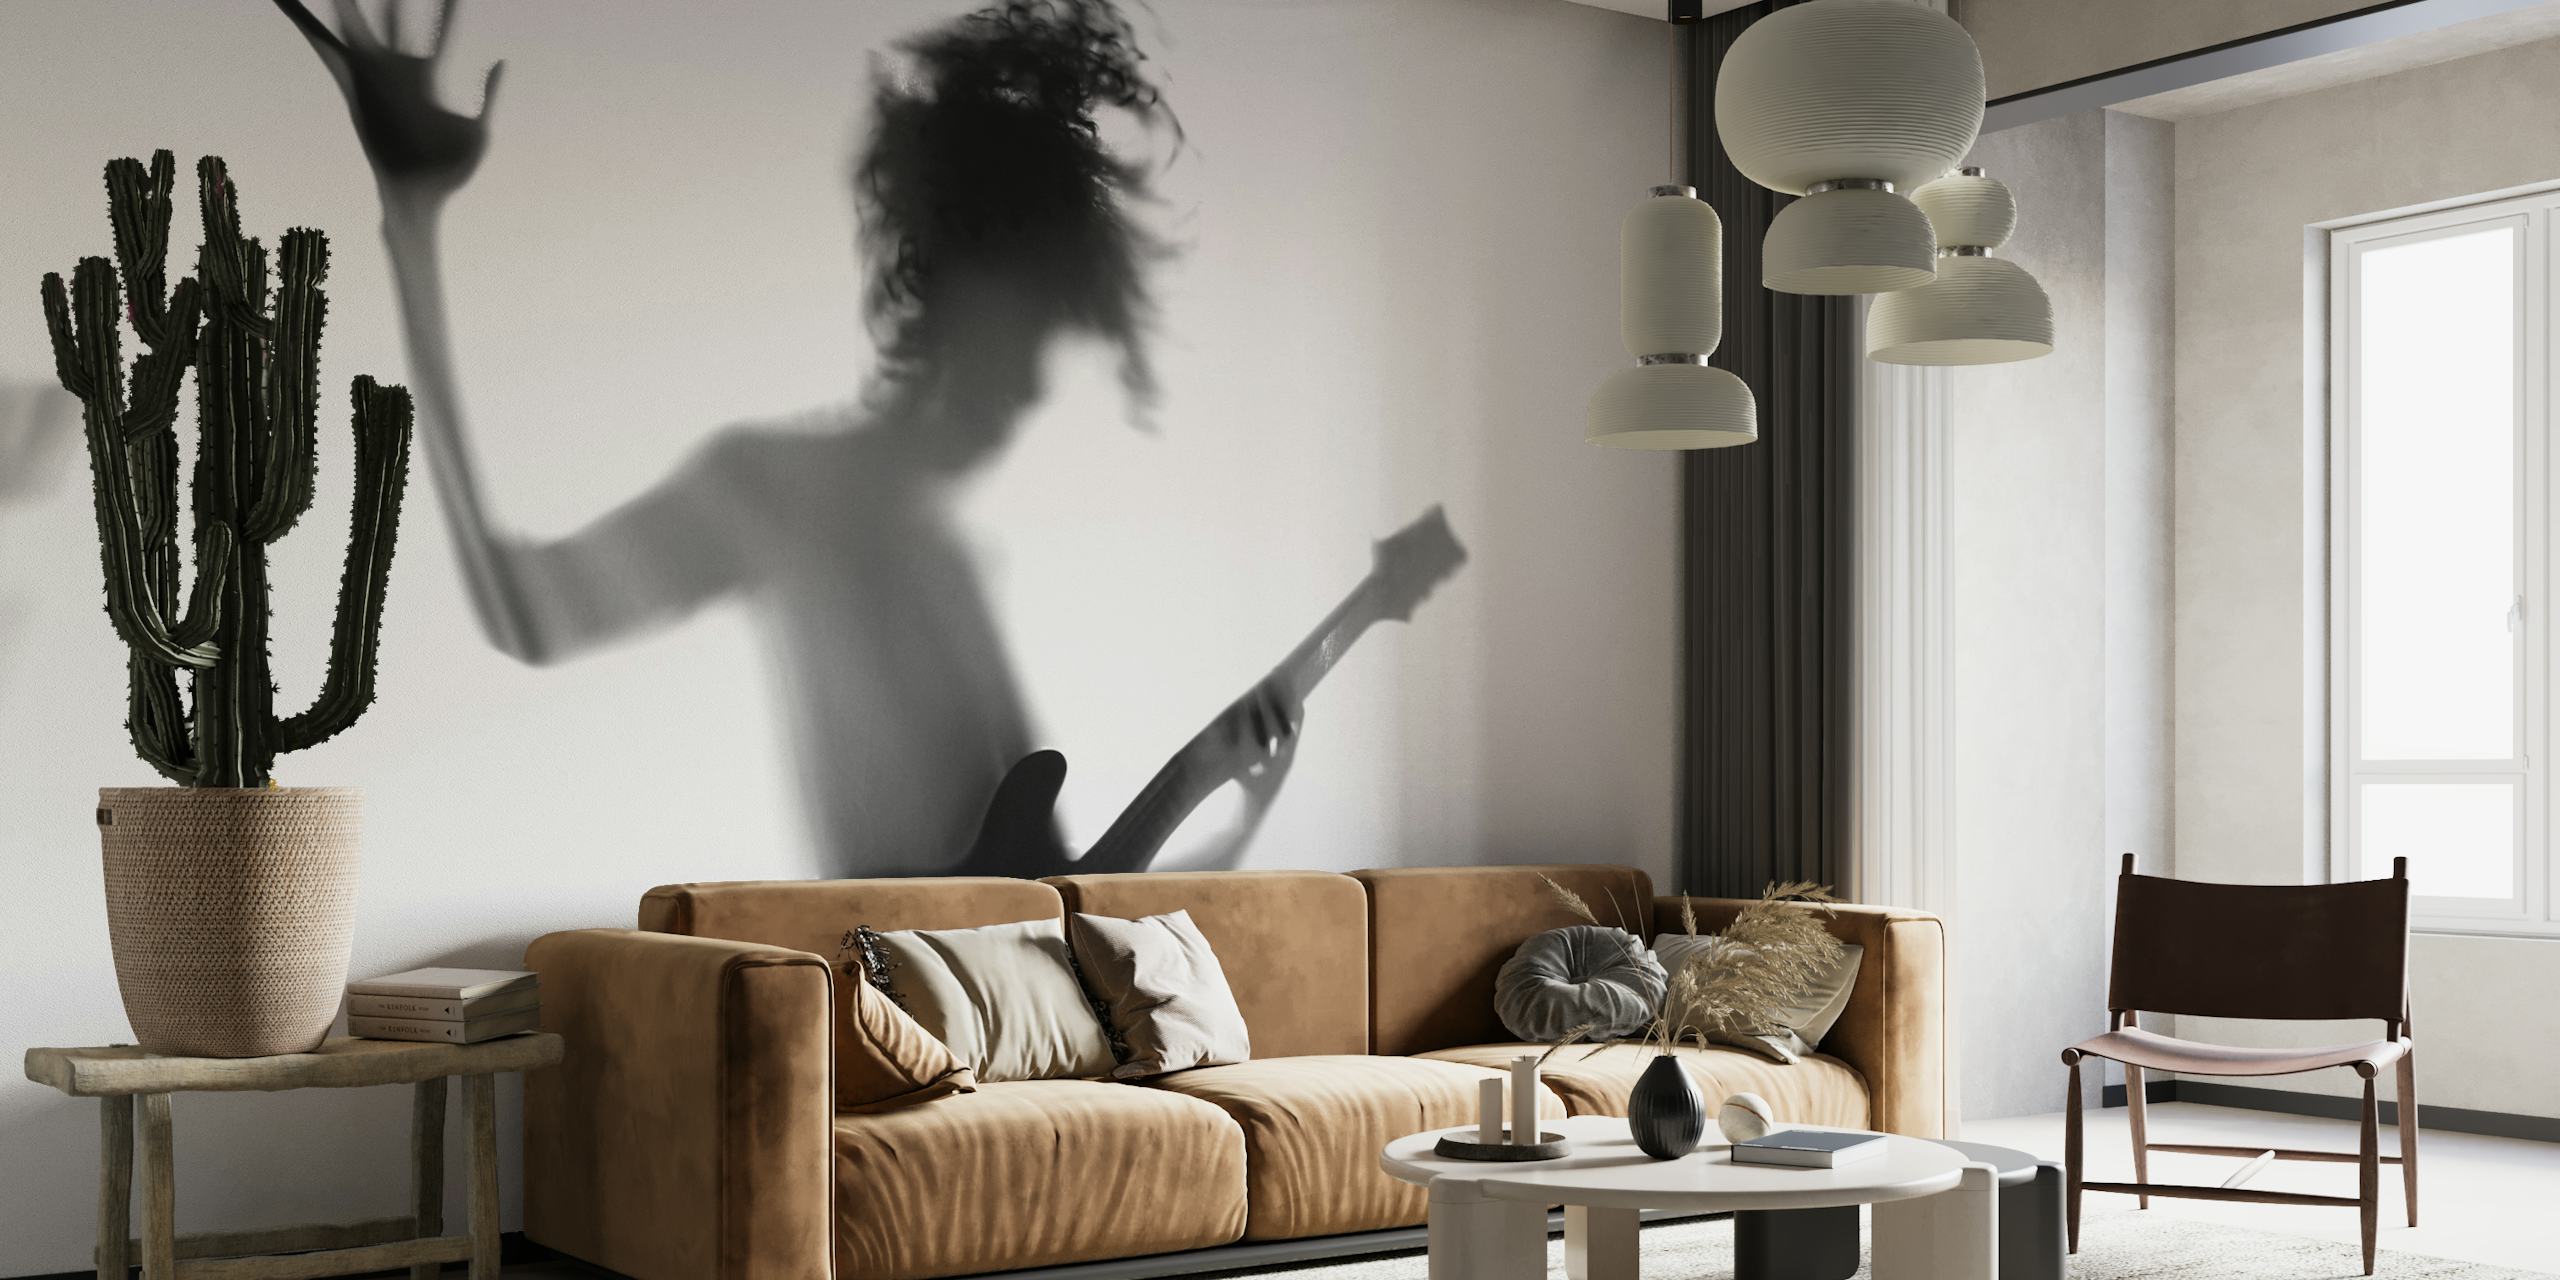 Silhouette di una persona che suona la chitarra in una posa dinamica in bianco e nero.